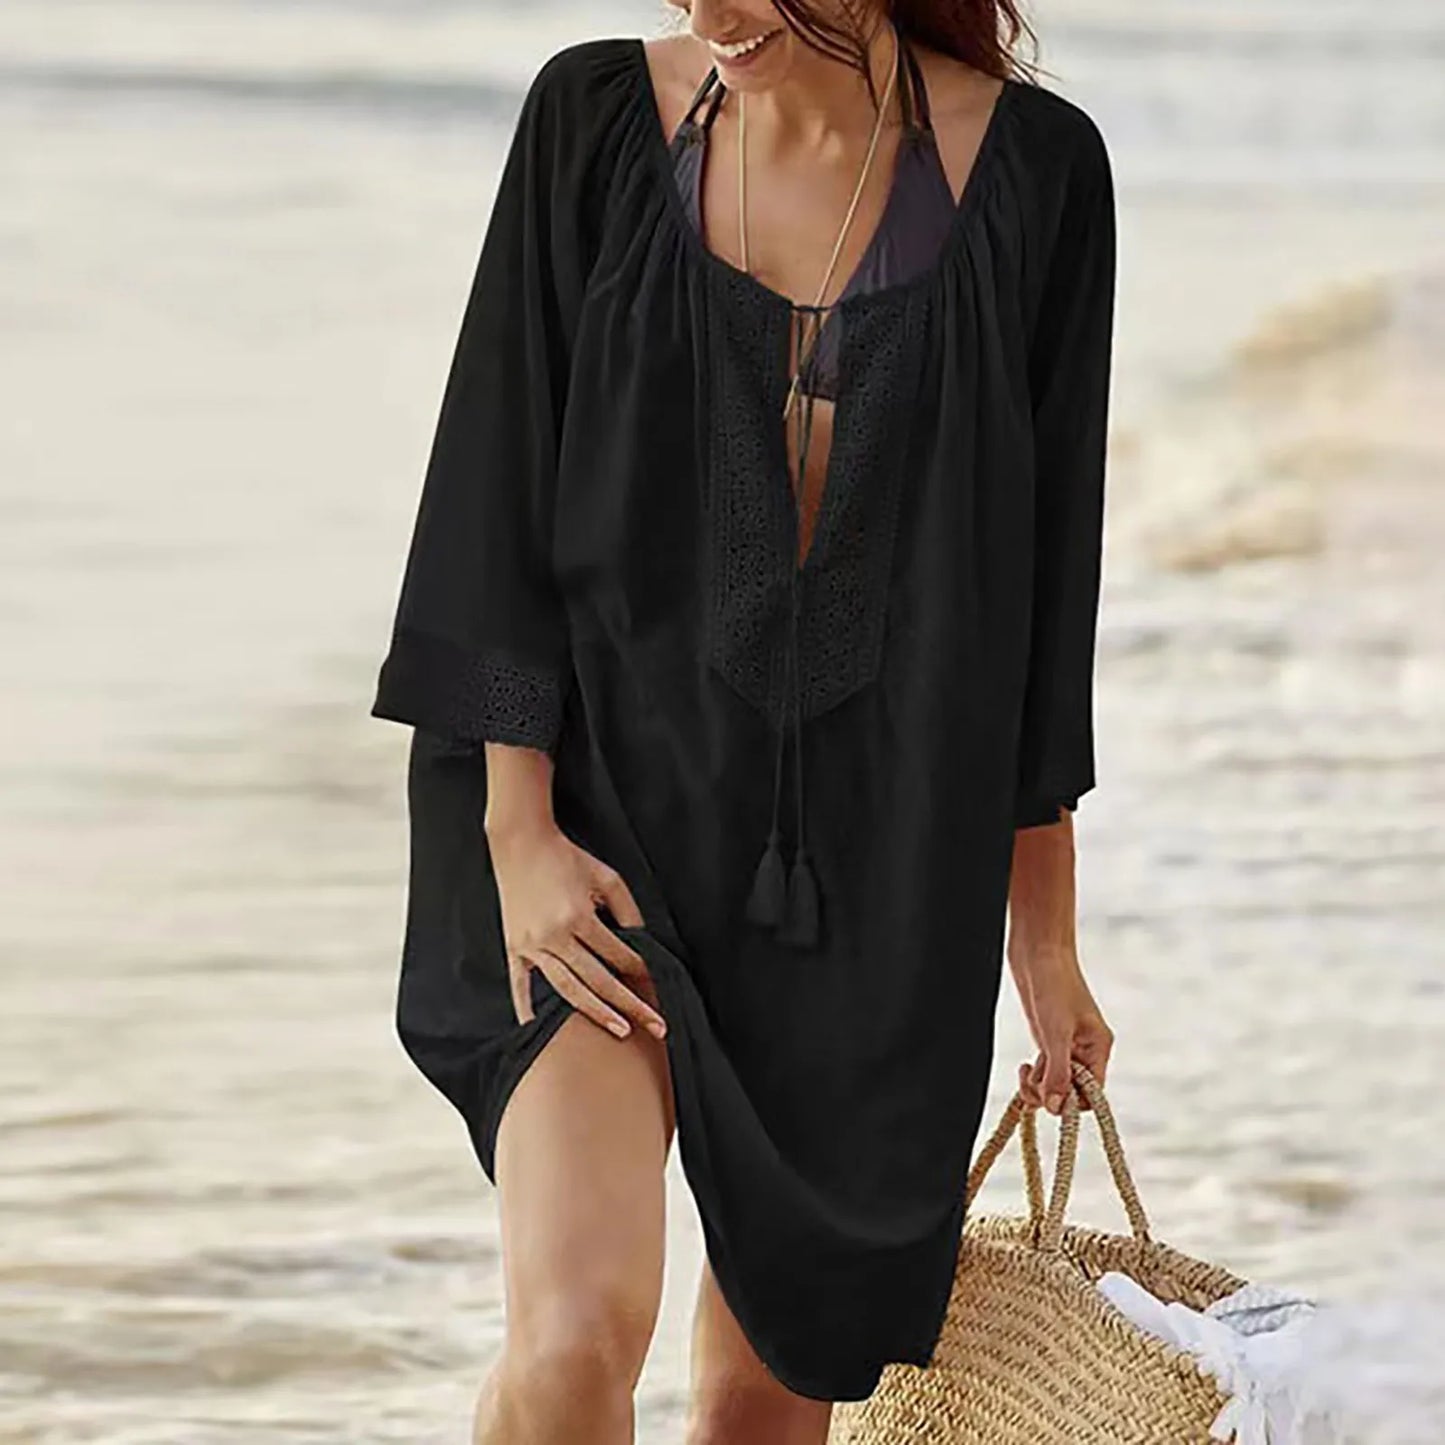 Amy Fashion - Casual Loose Midi Dress Beach Cover-Up Bikini Sets